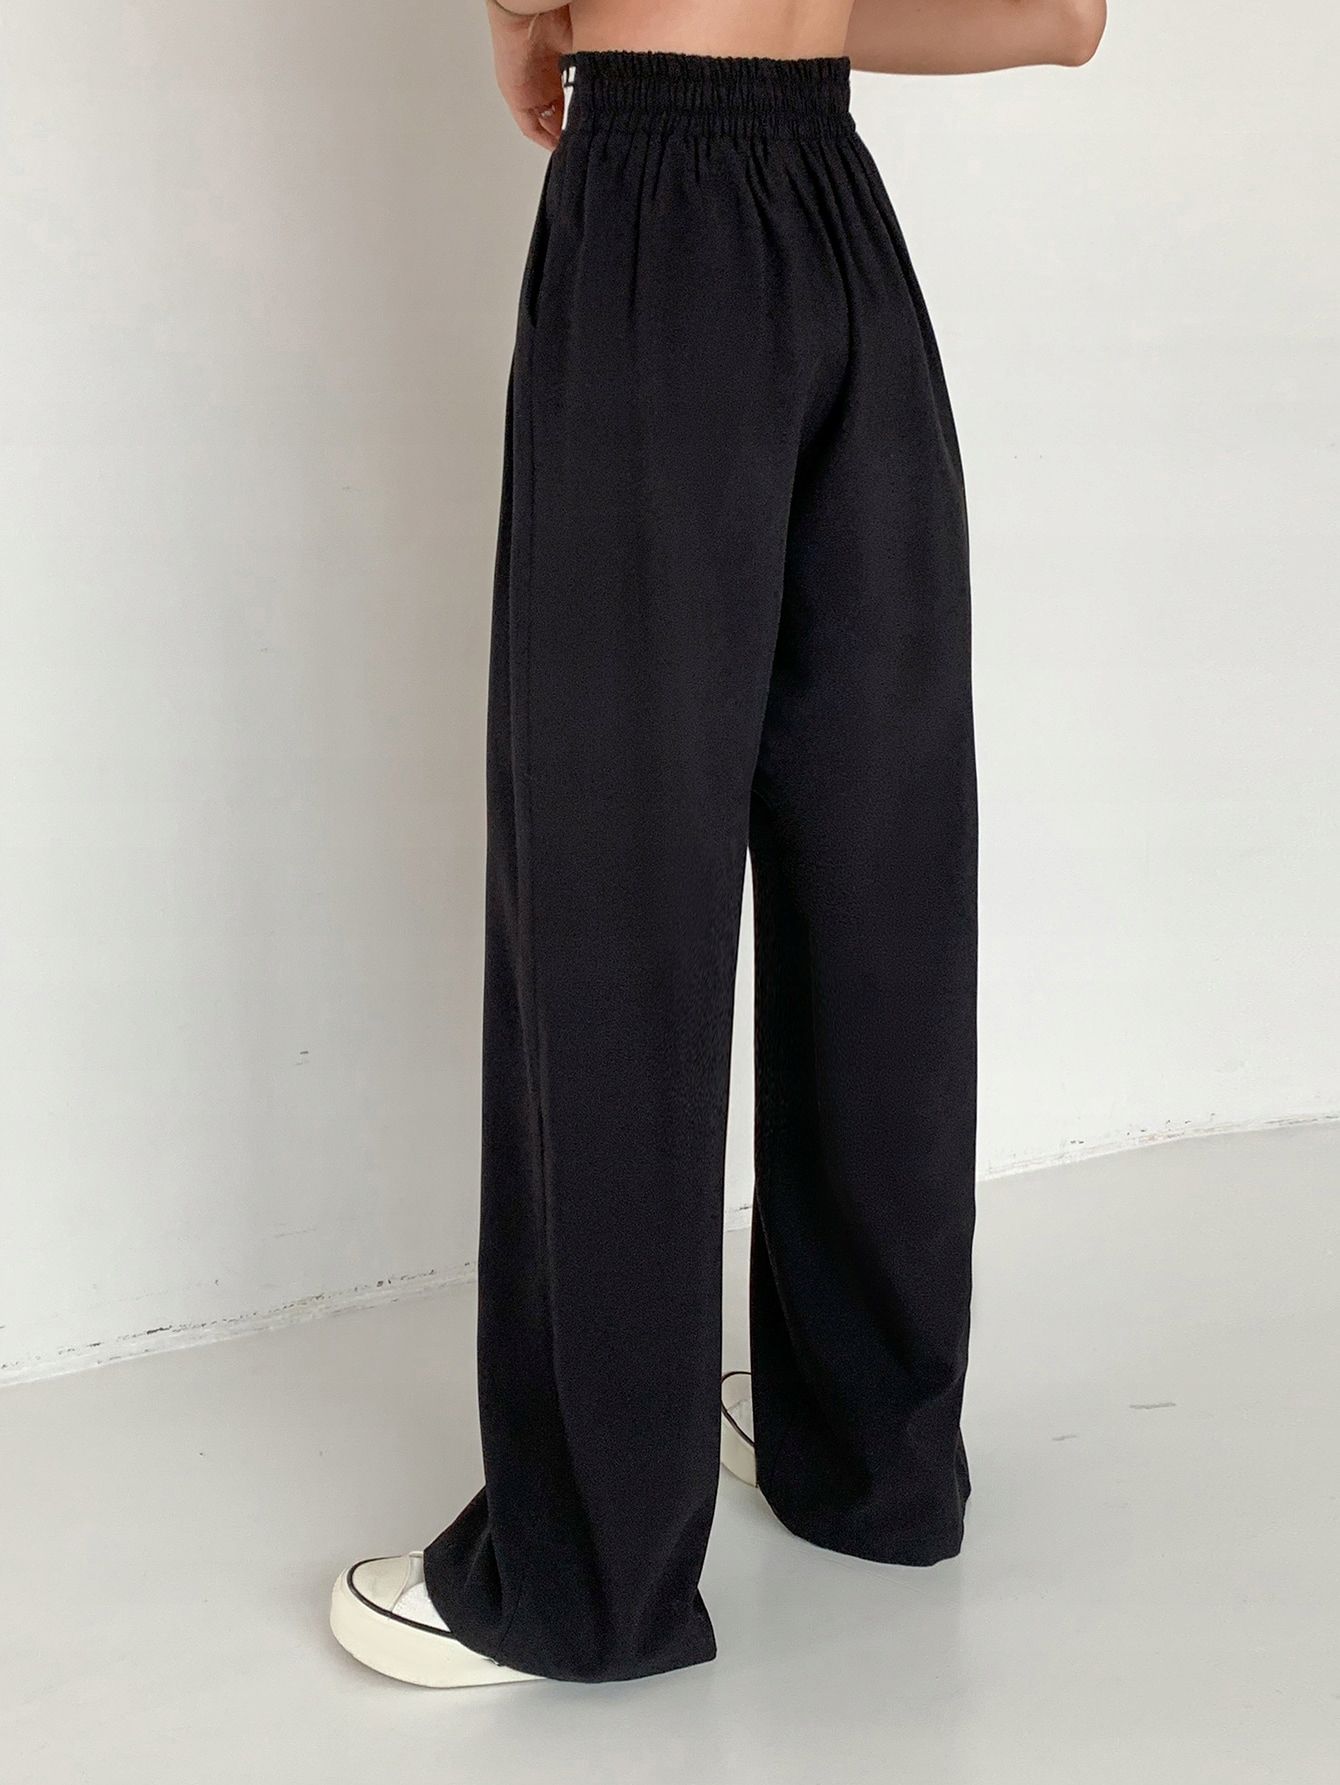 Spodnie Z Szerokimi Nogawkami Elastyczna Talia Czarne Casual Dazy L 40